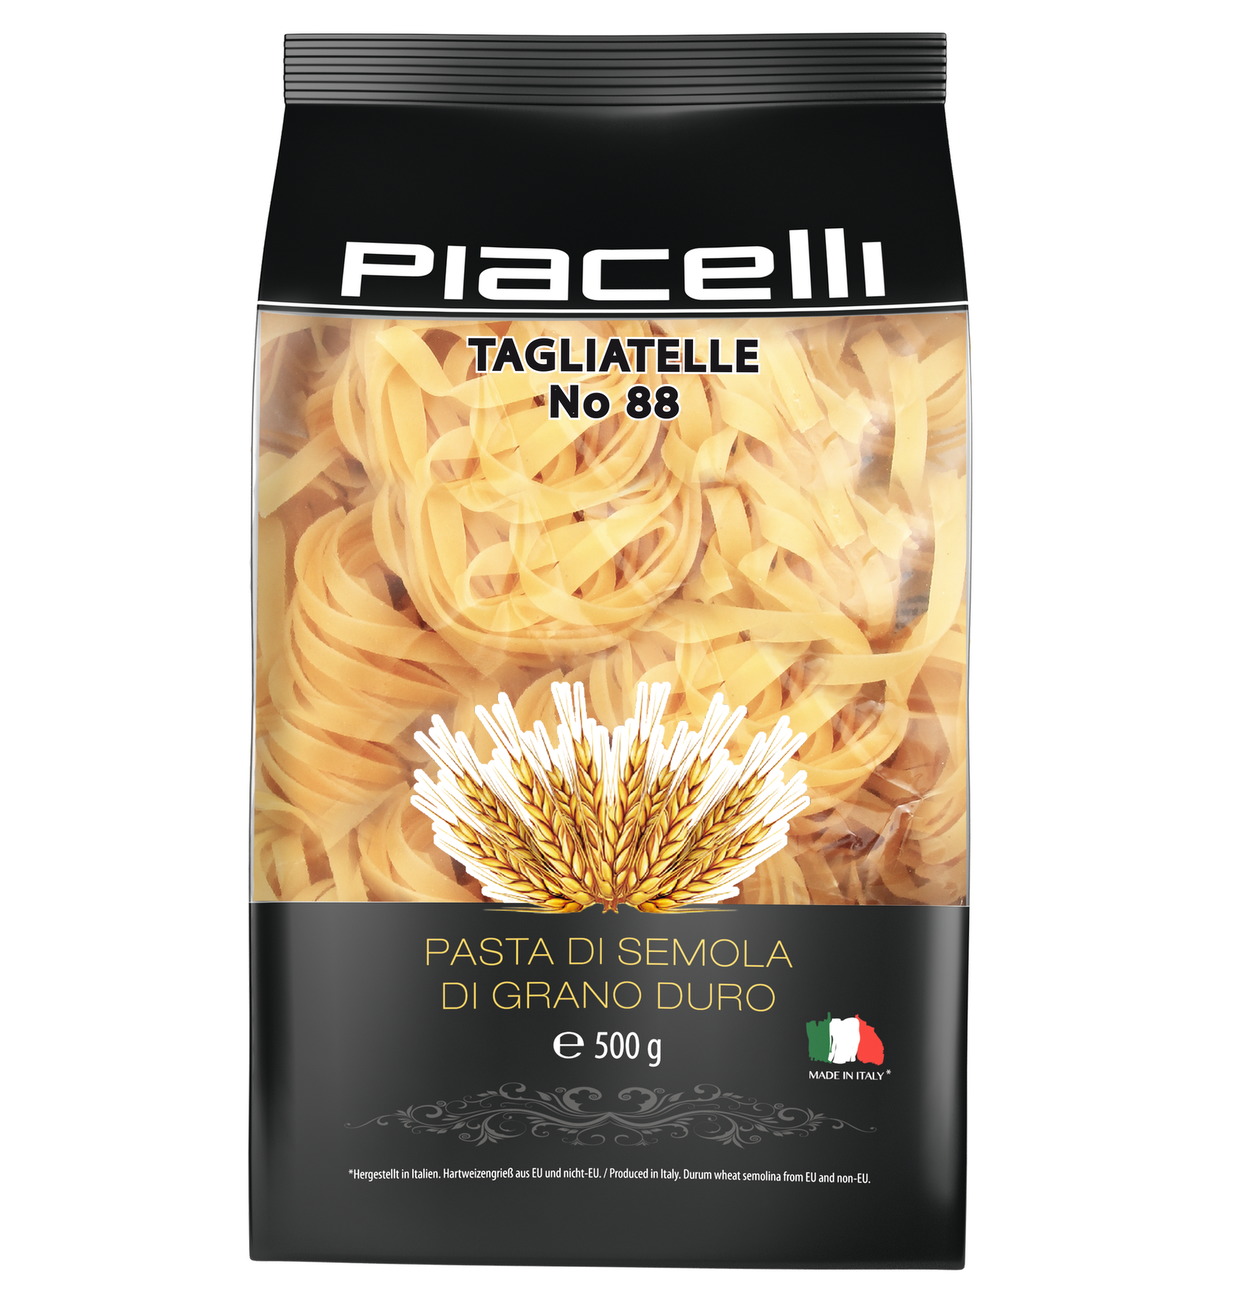 Piacelli Pasta Tagliatelle no 88, 500g
